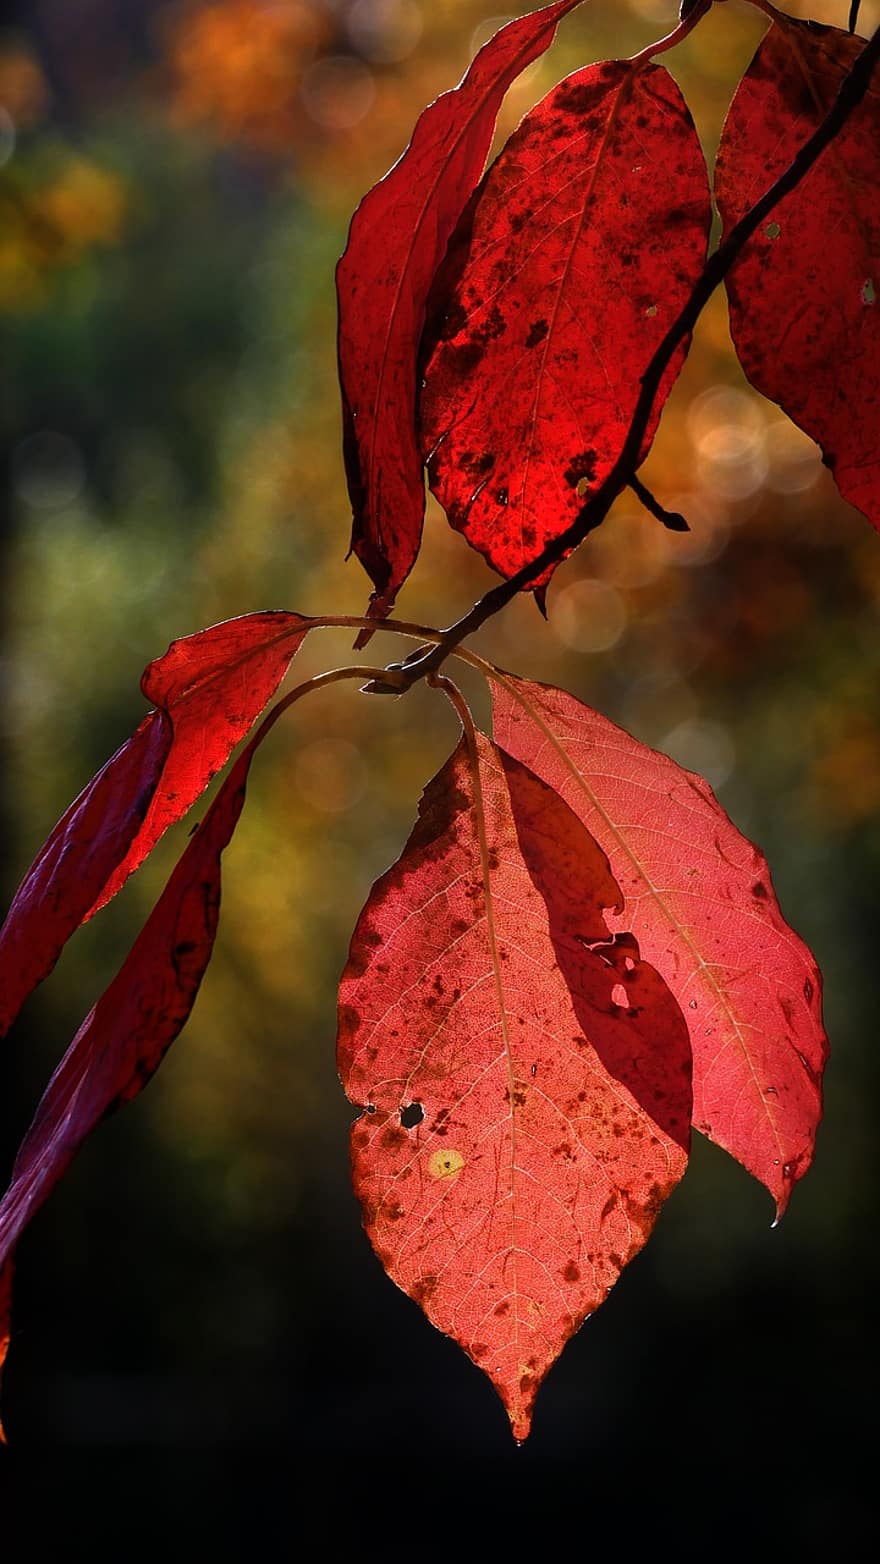 ngã, Lá đỏ, tán lá, mùa thu, Thiên nhiên, Lá cây, Mùa, màu vàng, cây, cận cảnh, Màu sắc rực rỡ